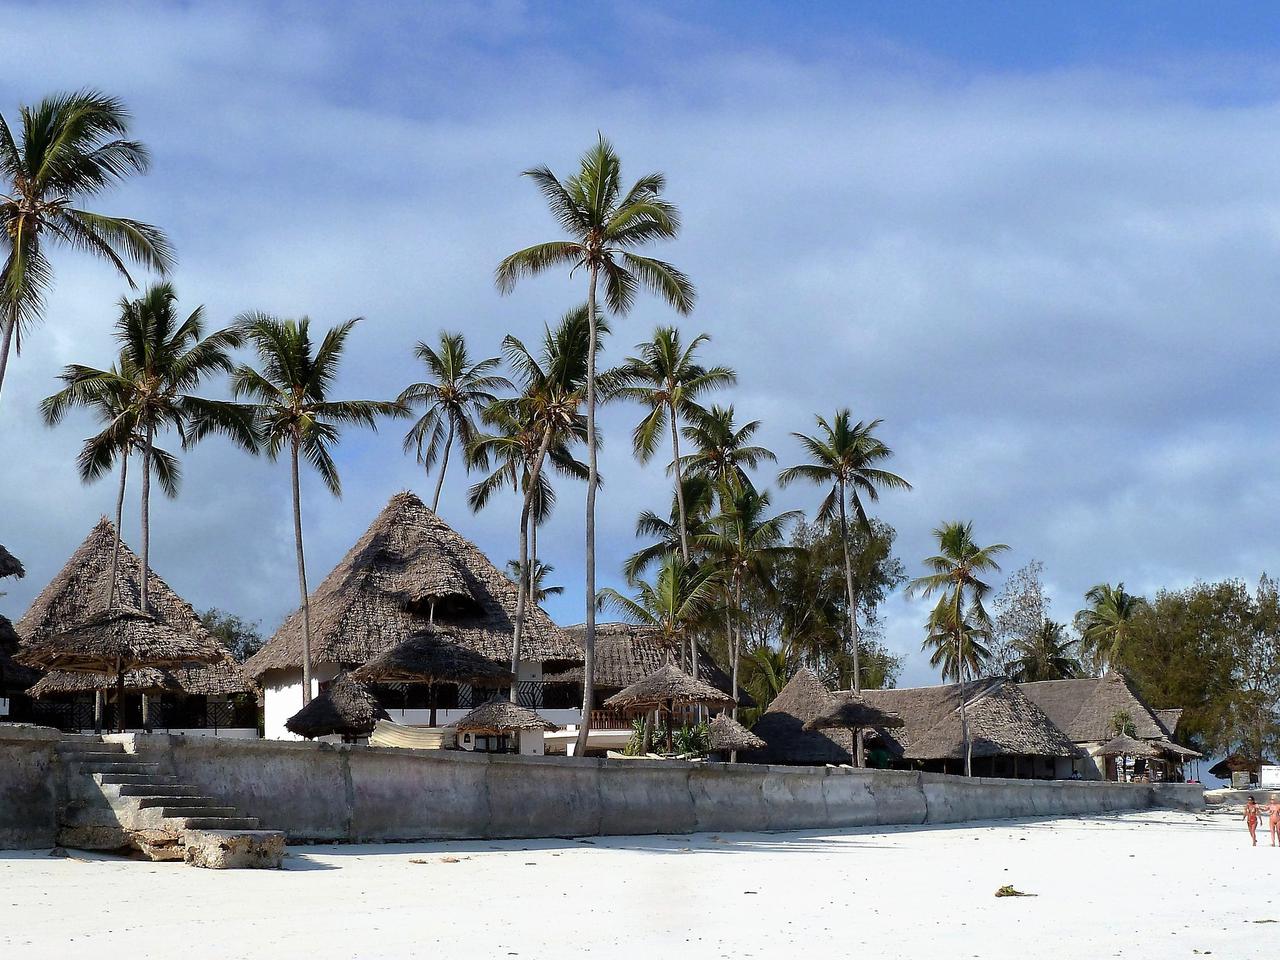 Pili Pili - firma oferująca wakacje na Zanzibarze - pod lupą gdańskiej prokuratury